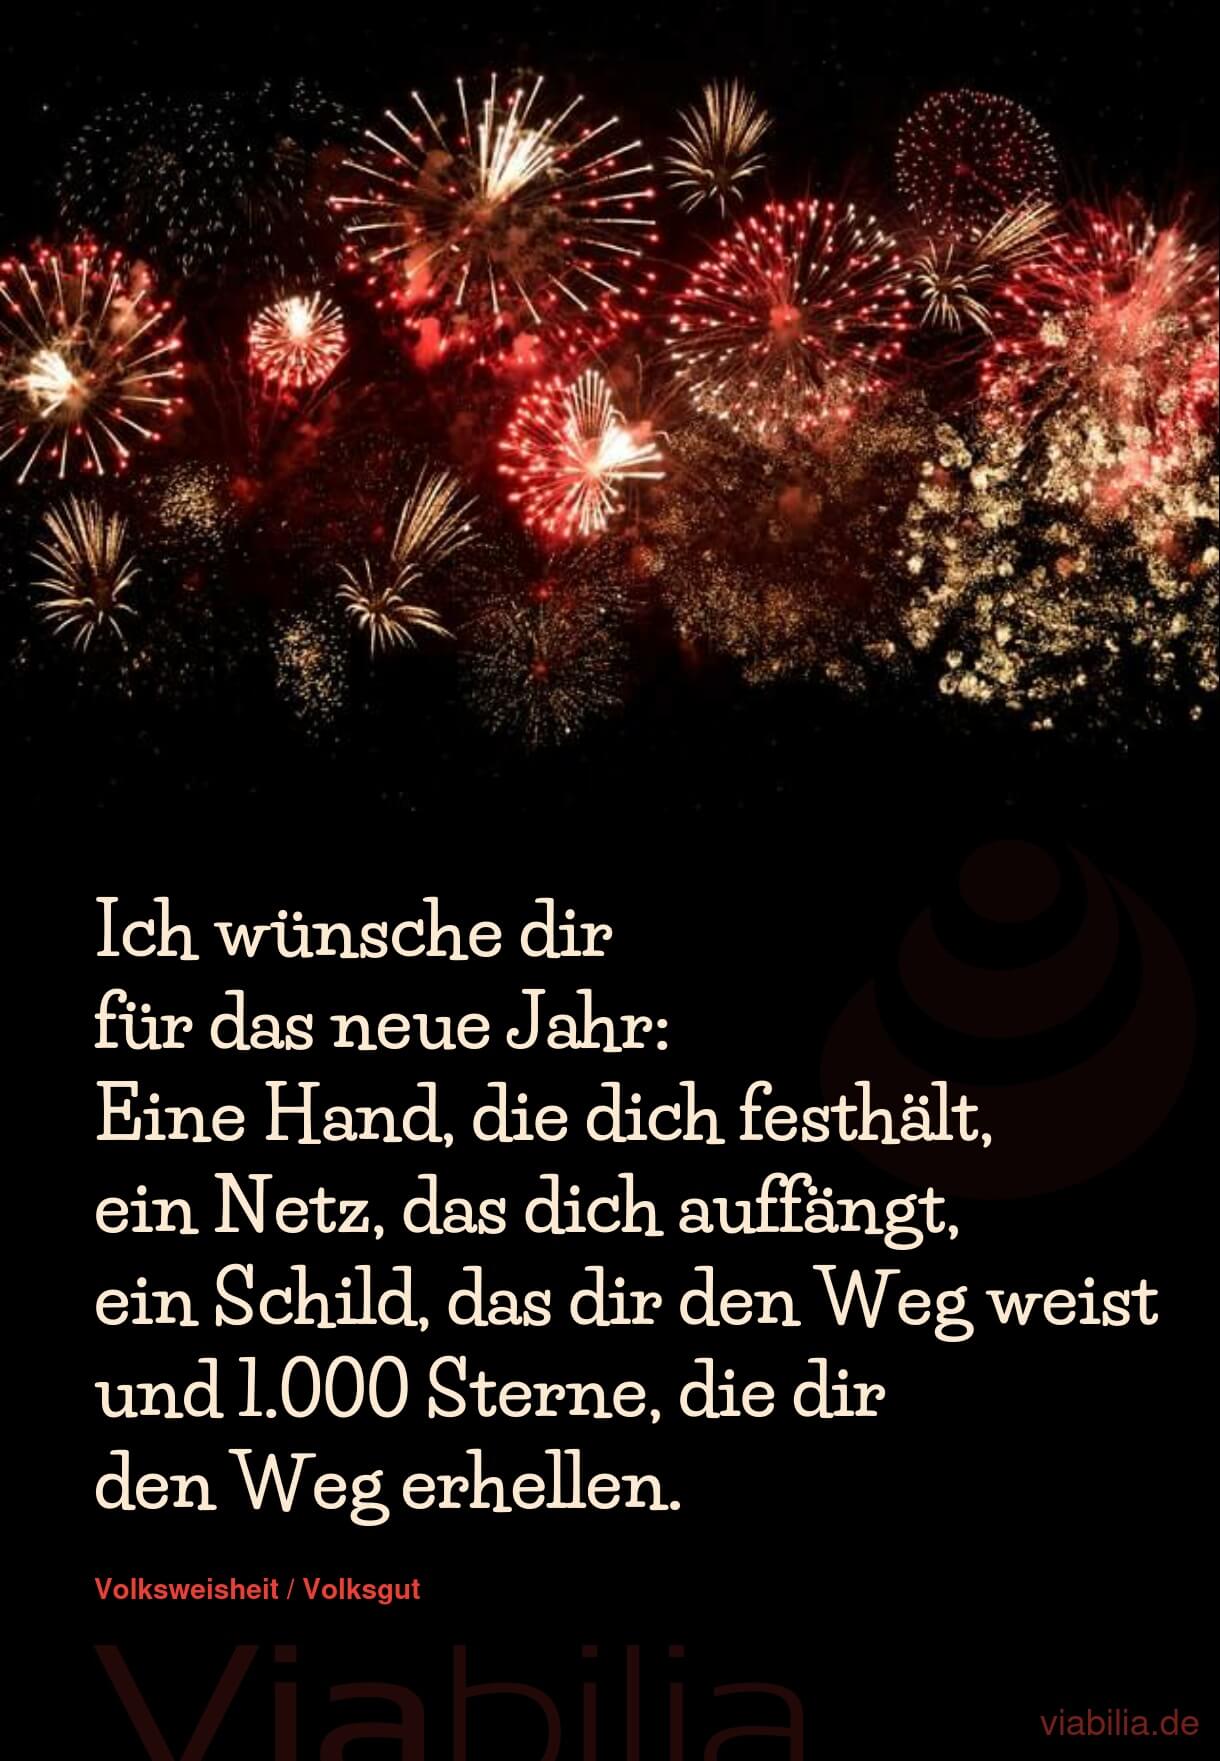 Wünsche zum neuen Jahr: 1000 Sterne